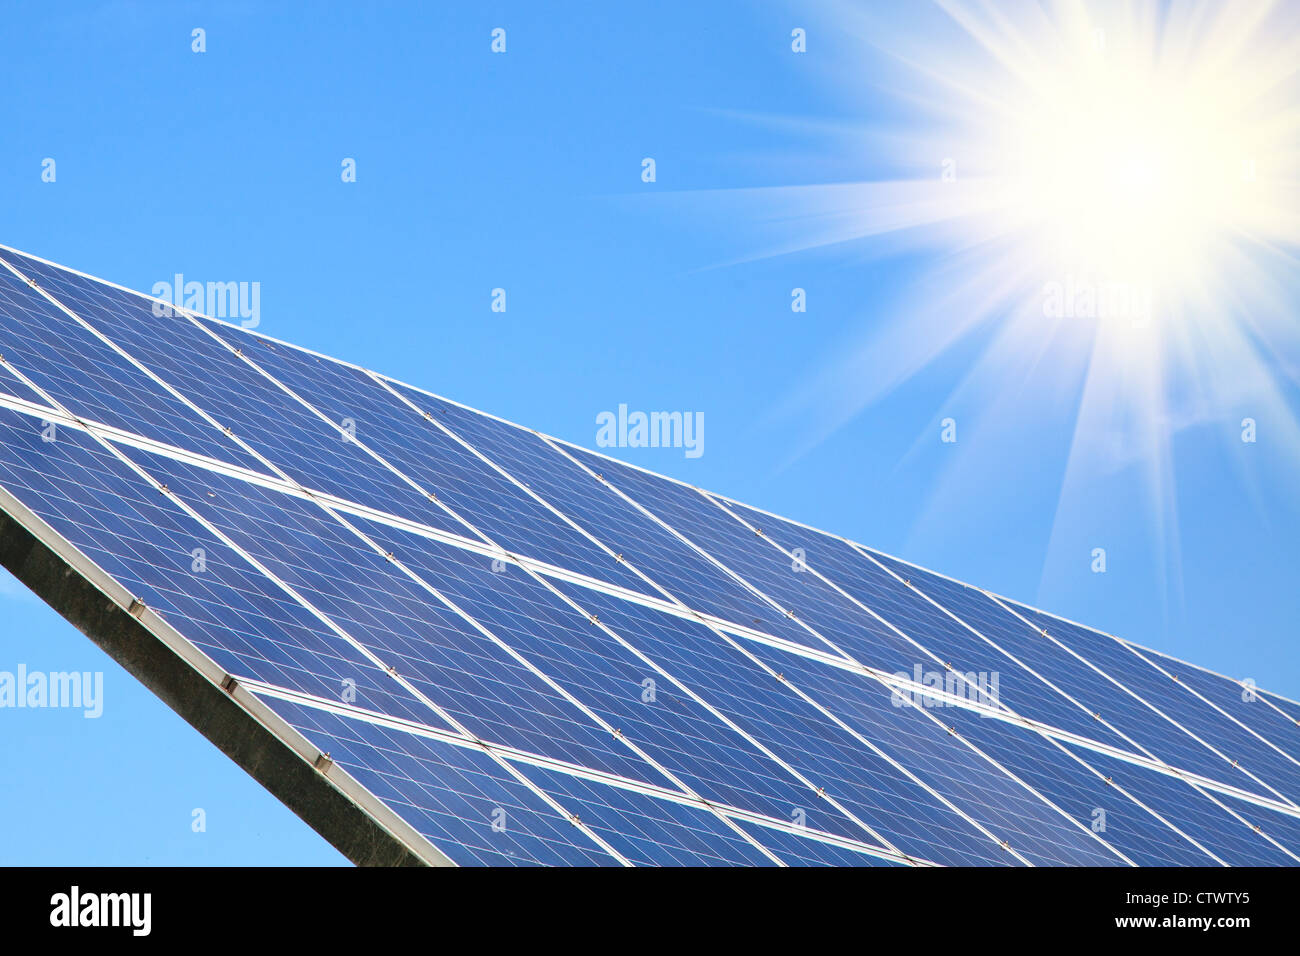 Solar panel against blue sky with sun sunlight Stock Photo